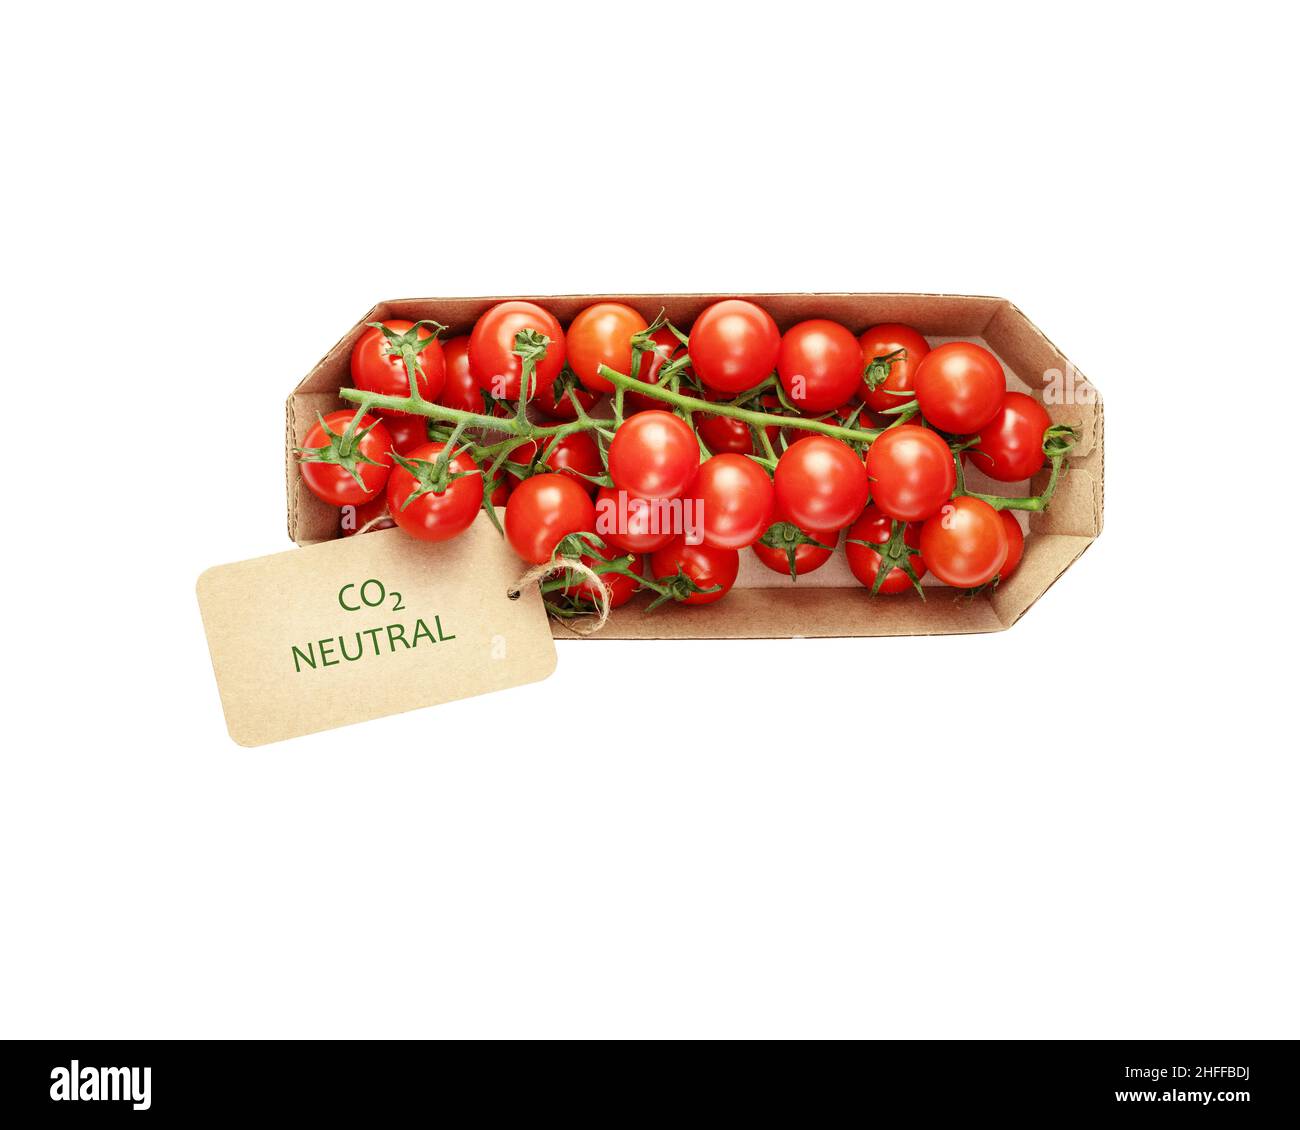 Tomates cerises biologiques isolées dans un emballage artisanal respectueux de l'environnement avec une étiquette portant l'inscription carbone neutre sur fond blanc.verrouillage de saison Banque D'Images